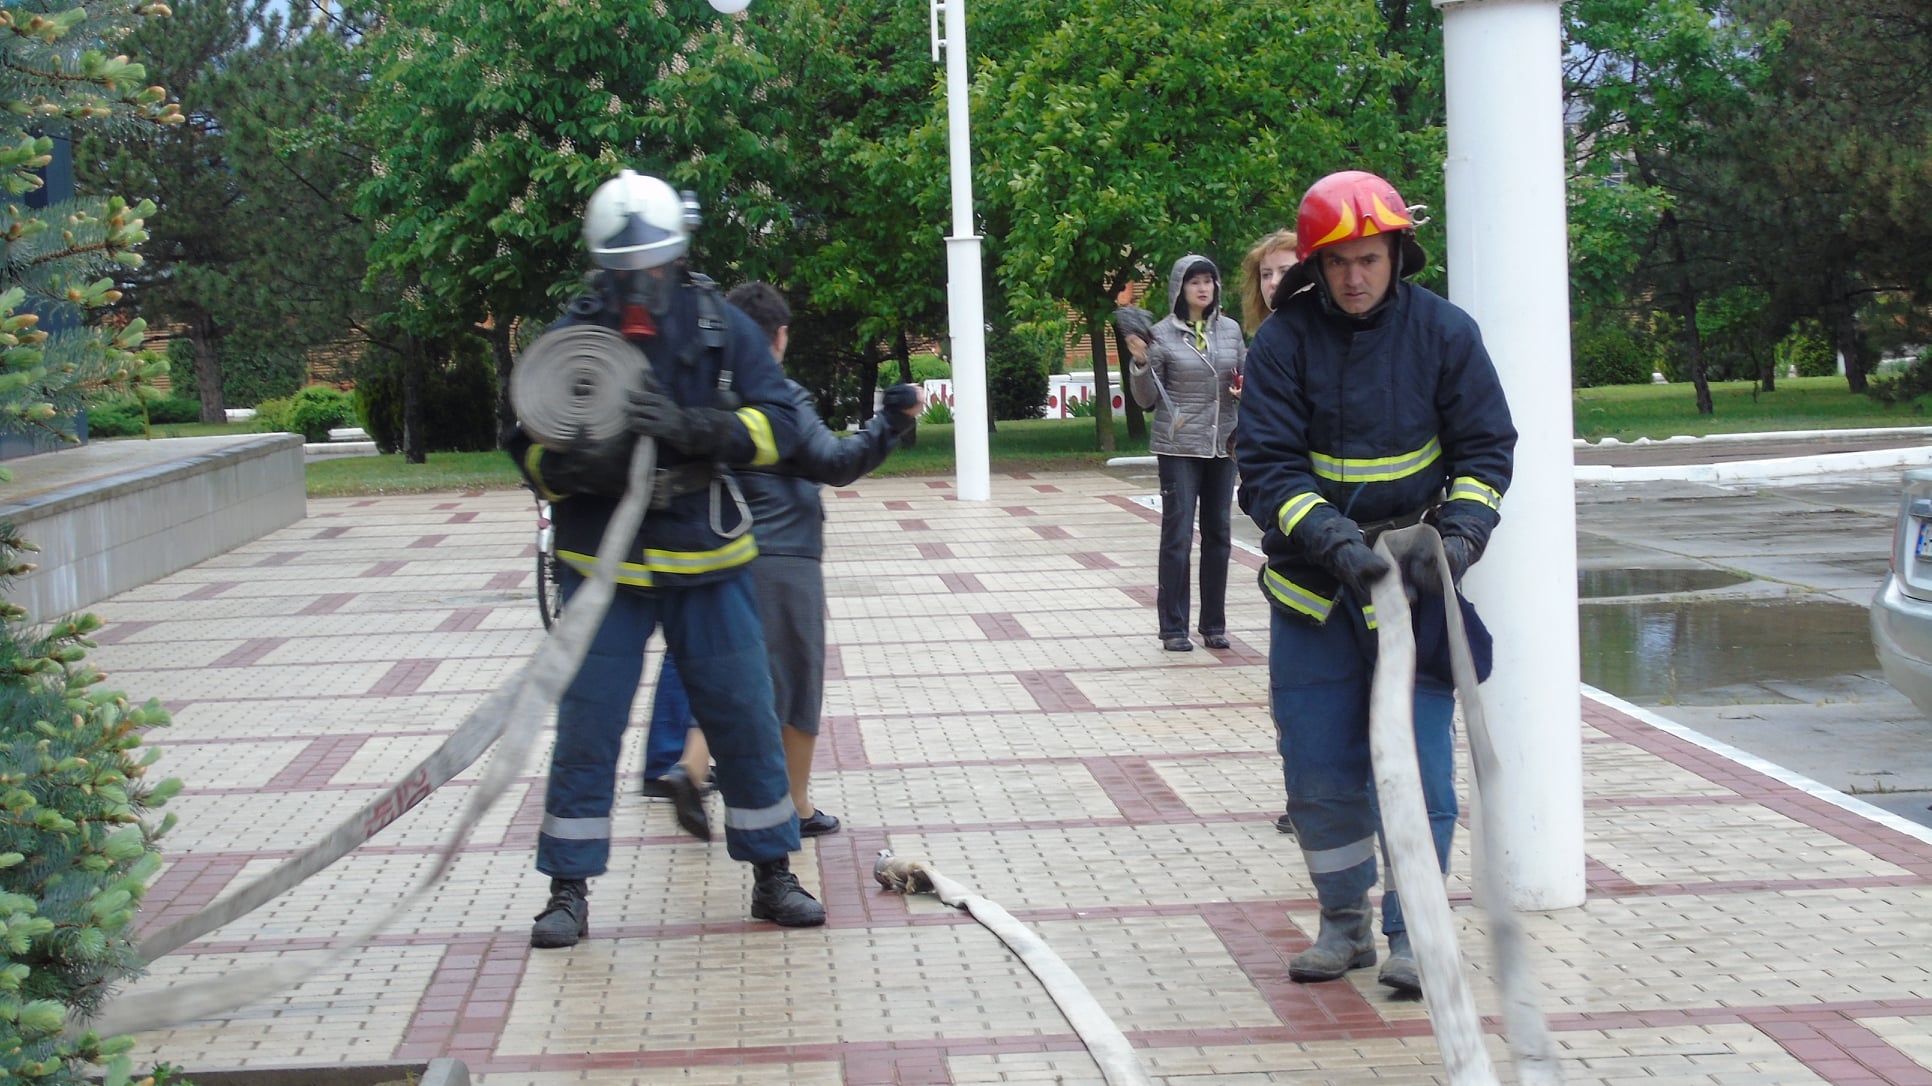 Пожар ликвидировали, персонал эвакуировали: в Администрации Измаильского морского порта прошла тренировка